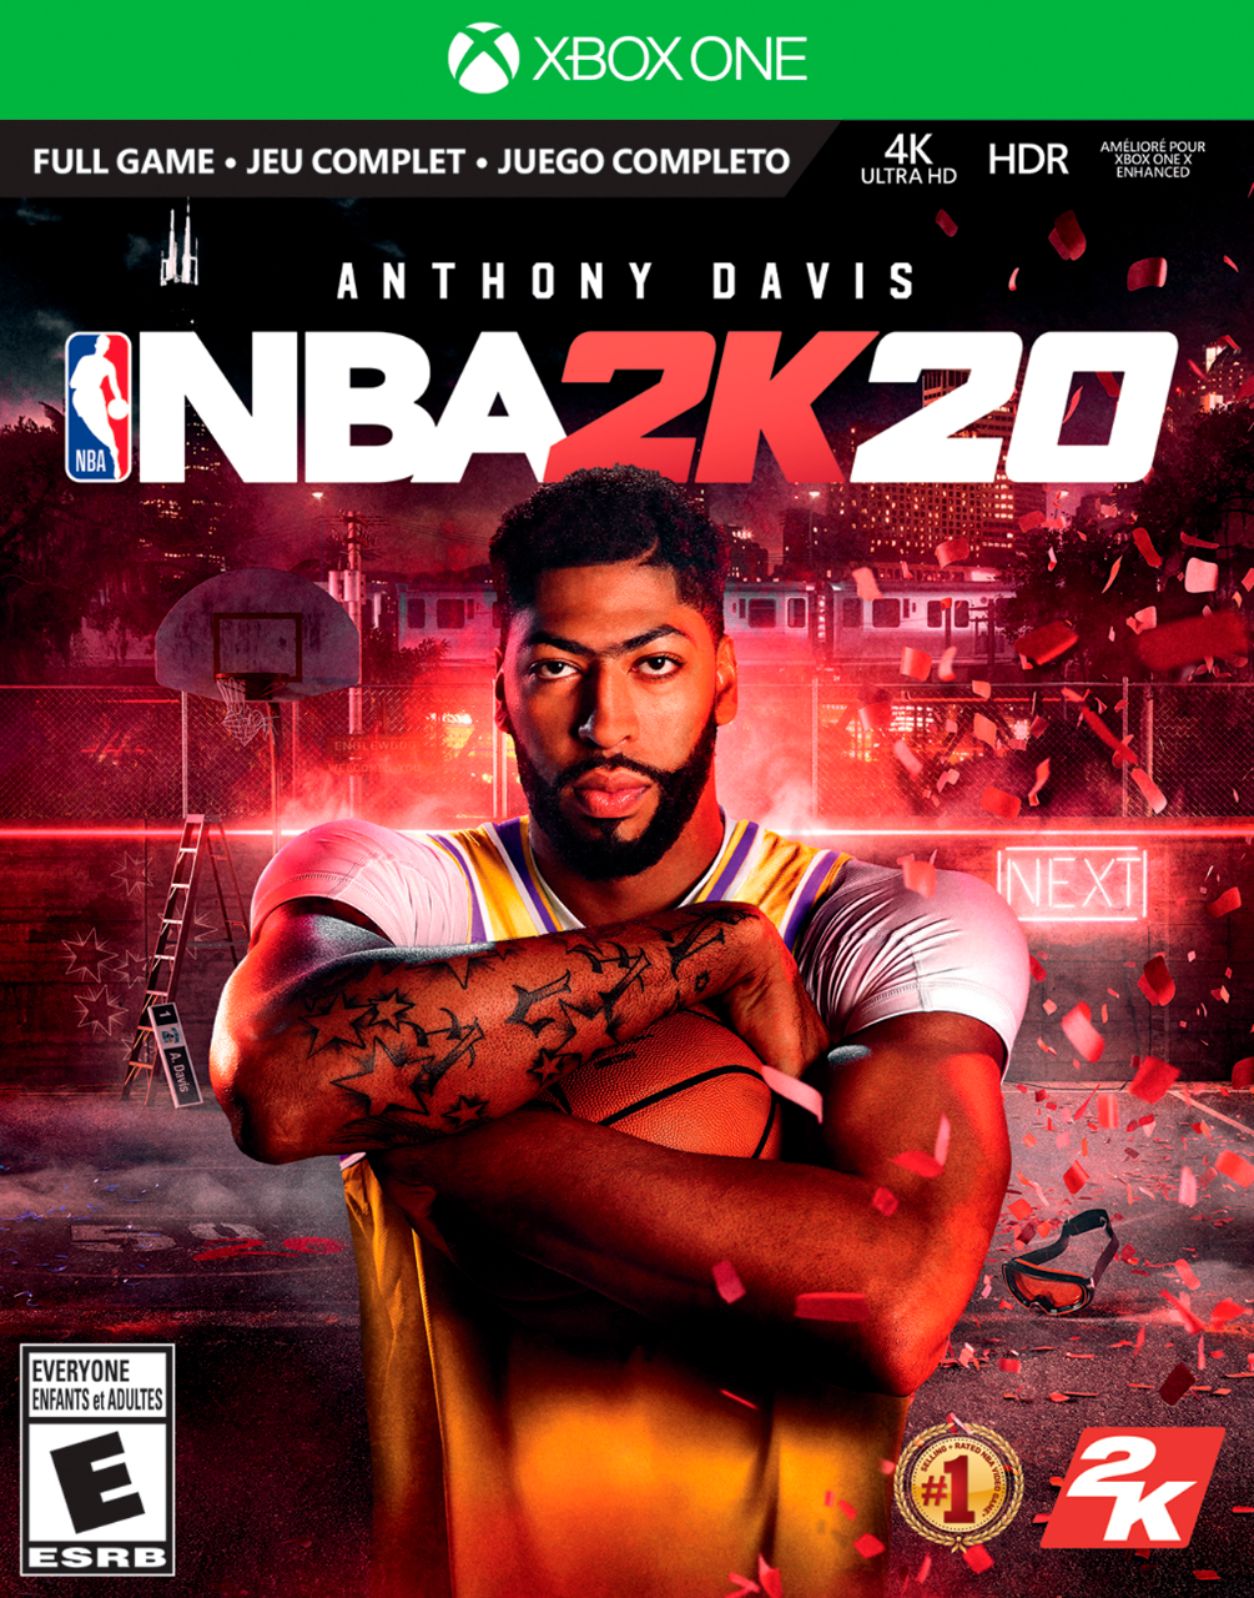 NBA 2K18 & 2K19 2 Game Bundle (Microsoft Xbox One) w/ Case & Manual  710425590504